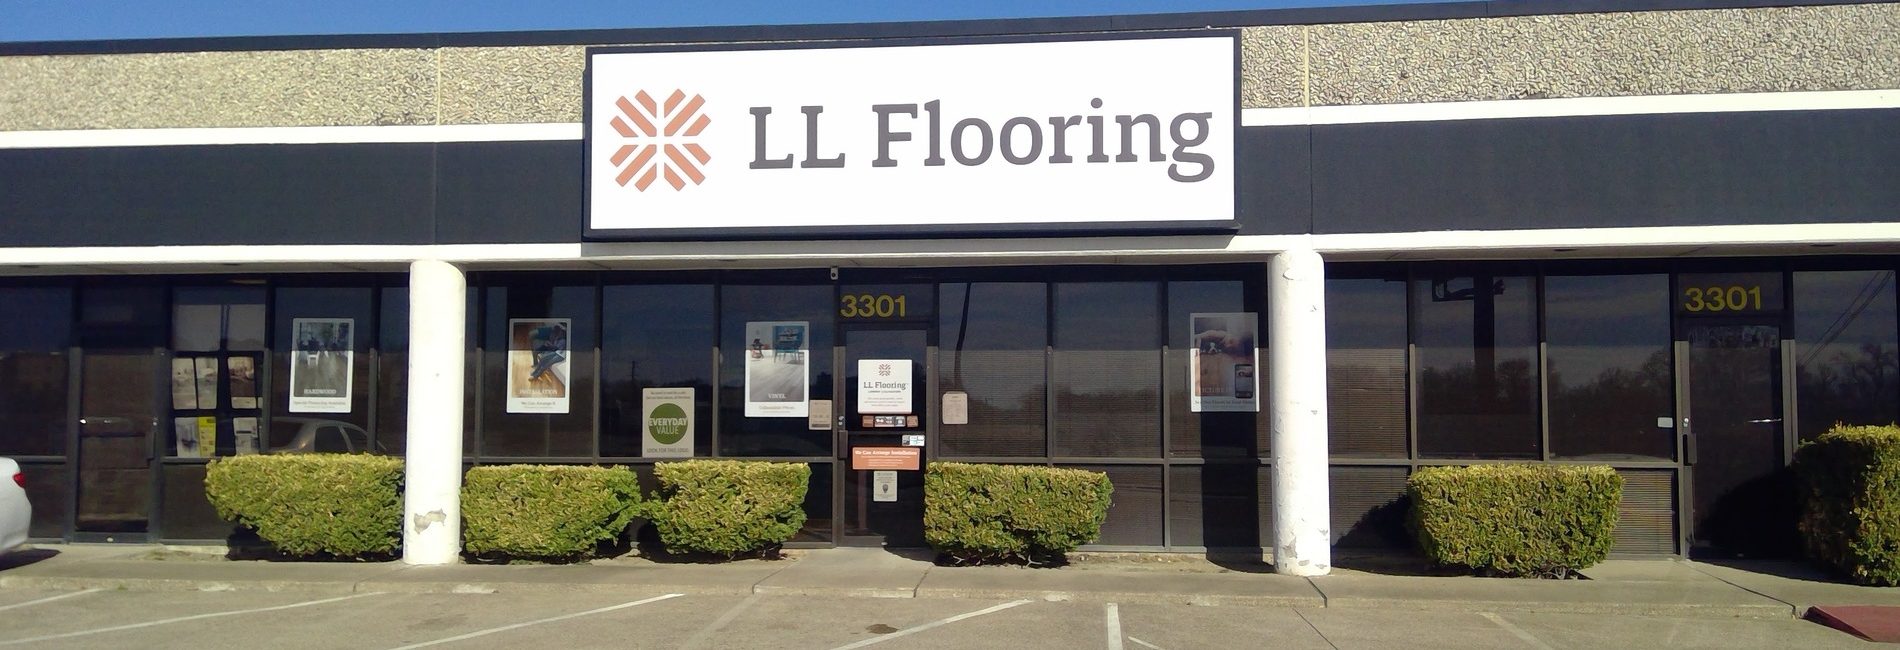 LL Flooring 4